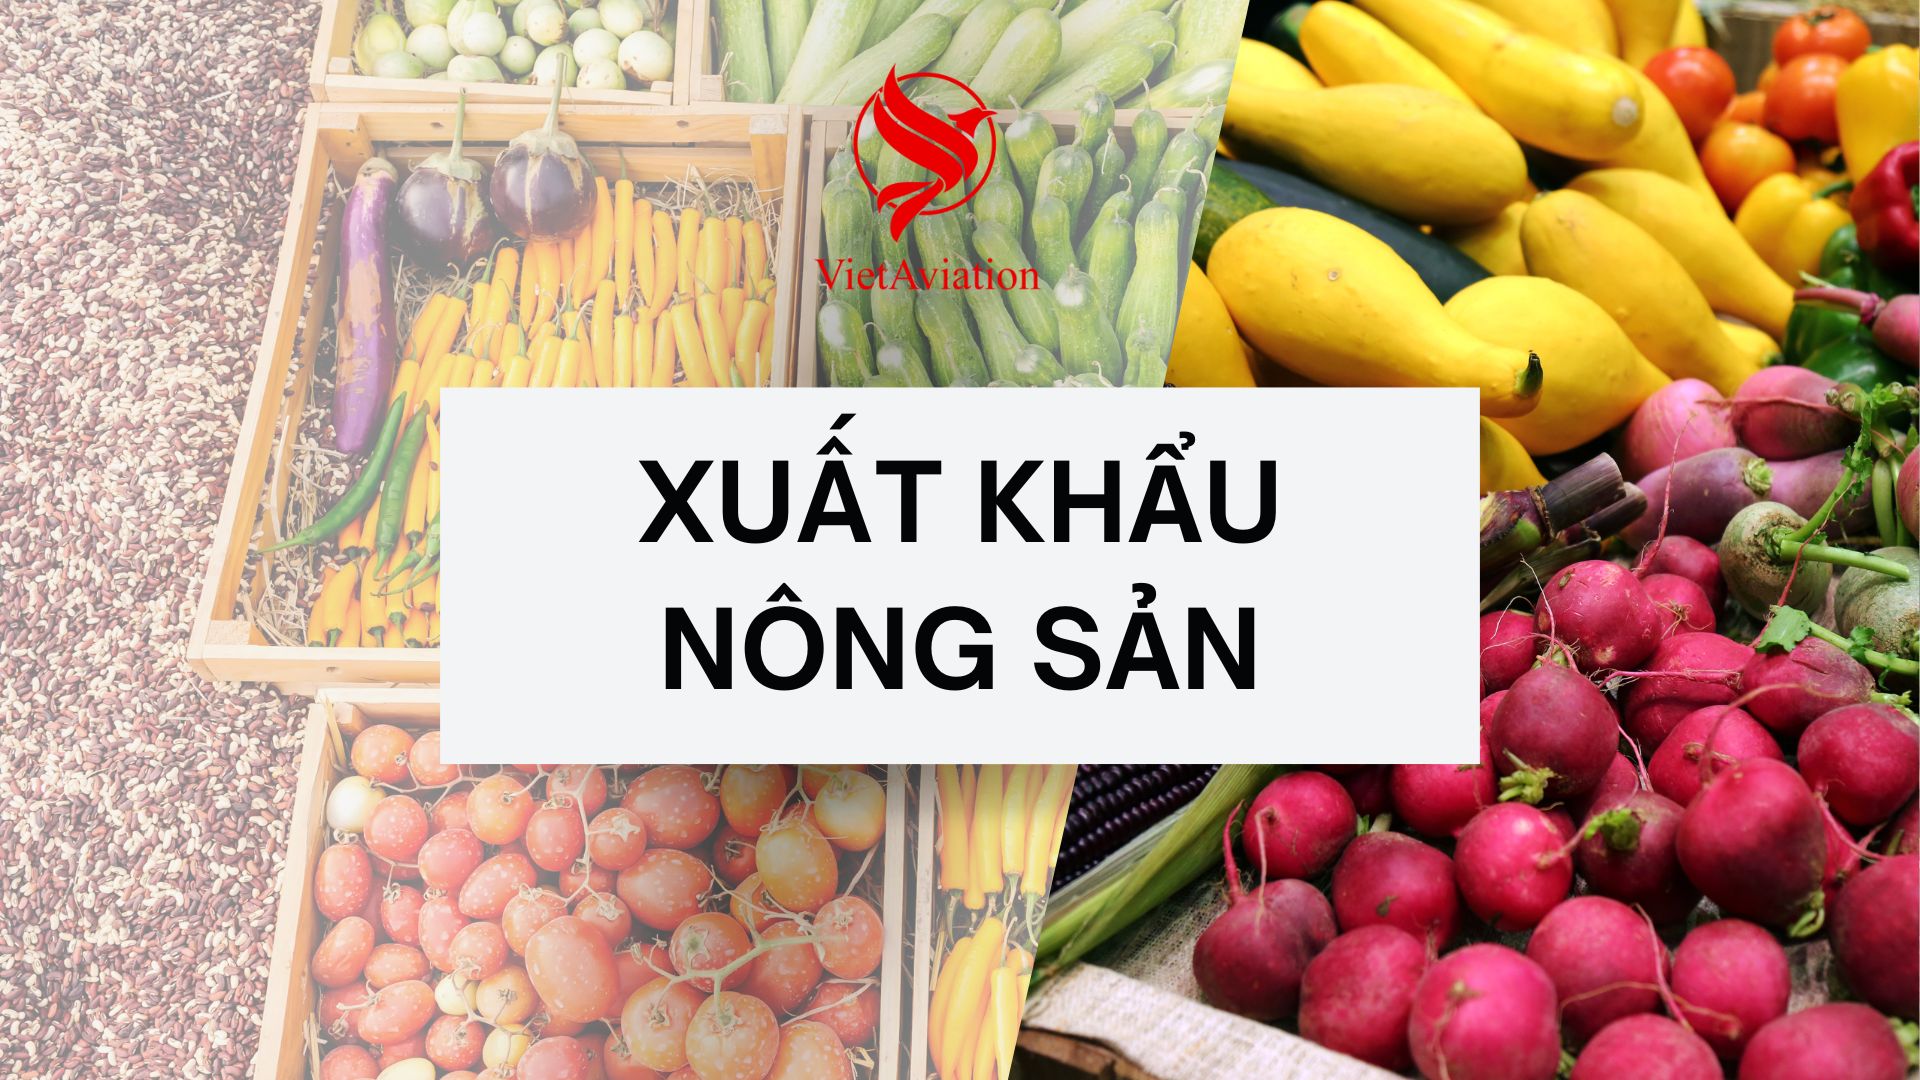 Xuất khẩu nông sản Việt Nam đi Trung Quốc